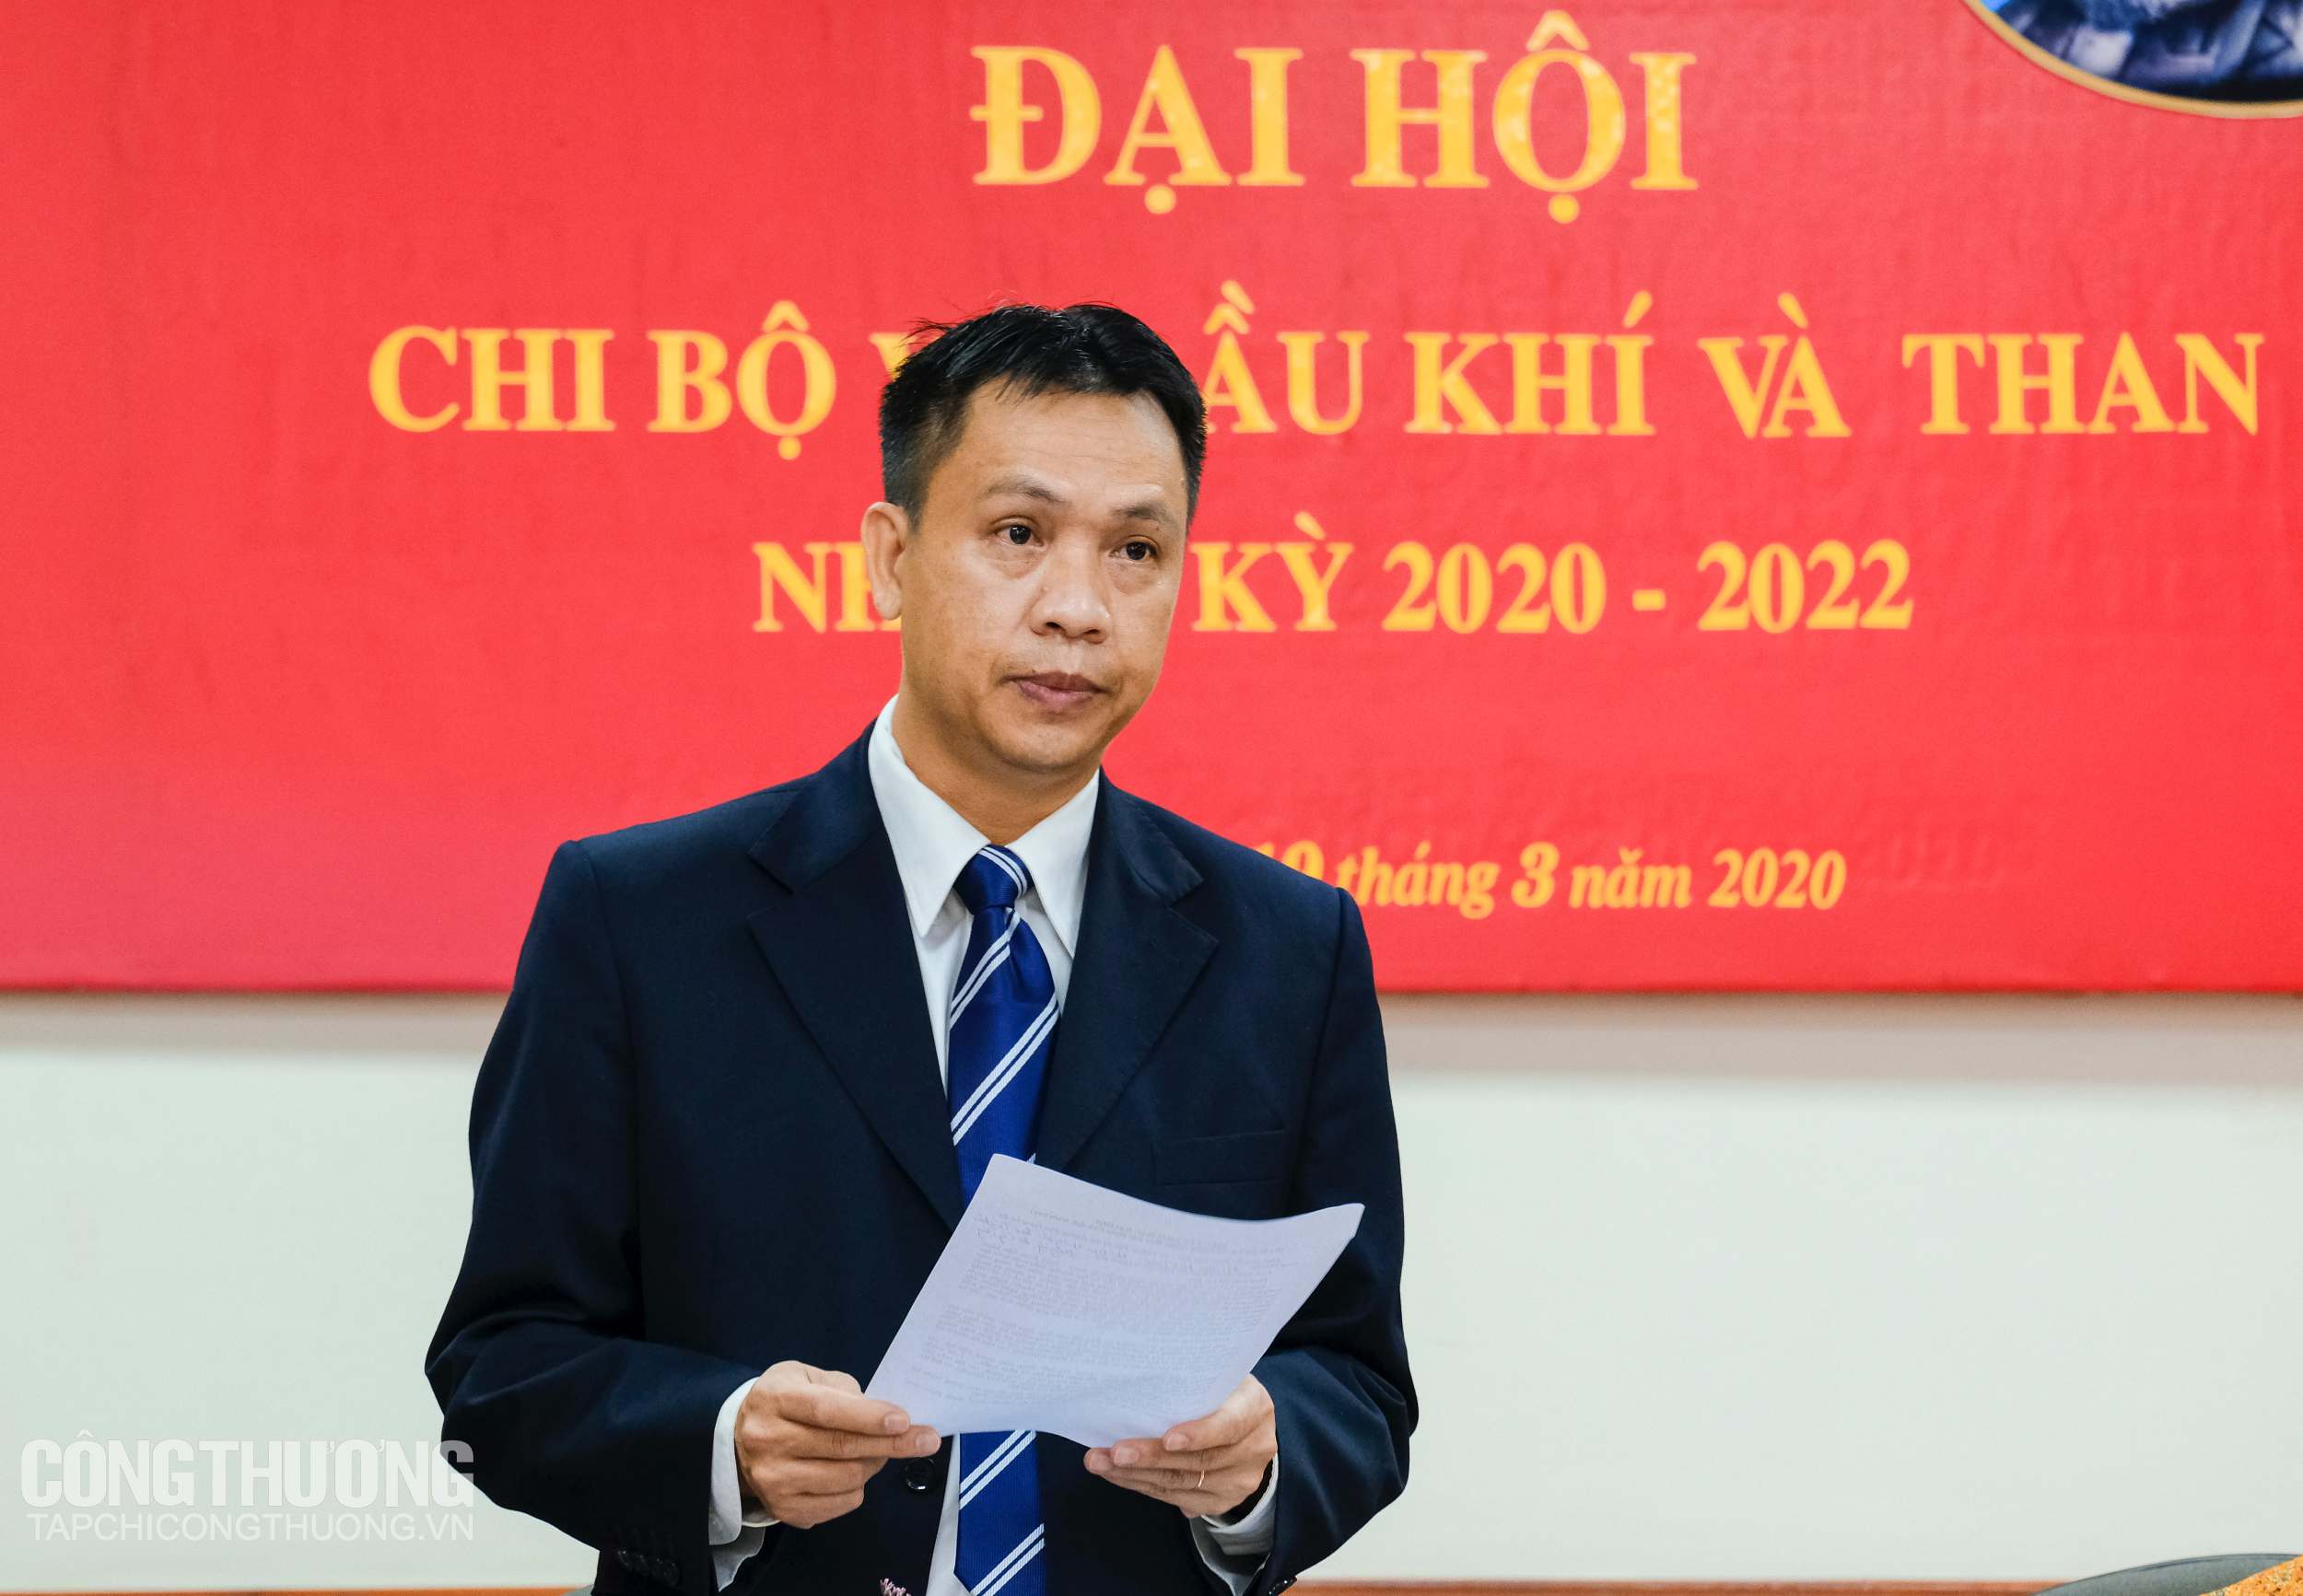 Đồng chí Nguyễn Việt Sơn - Bí thư Chi bộ, Vụ trưởng Vụ Dầu khí và Than báo cáo kiểm điểm của Cấp uỷ nhiệm kỳ 2017 - 2020